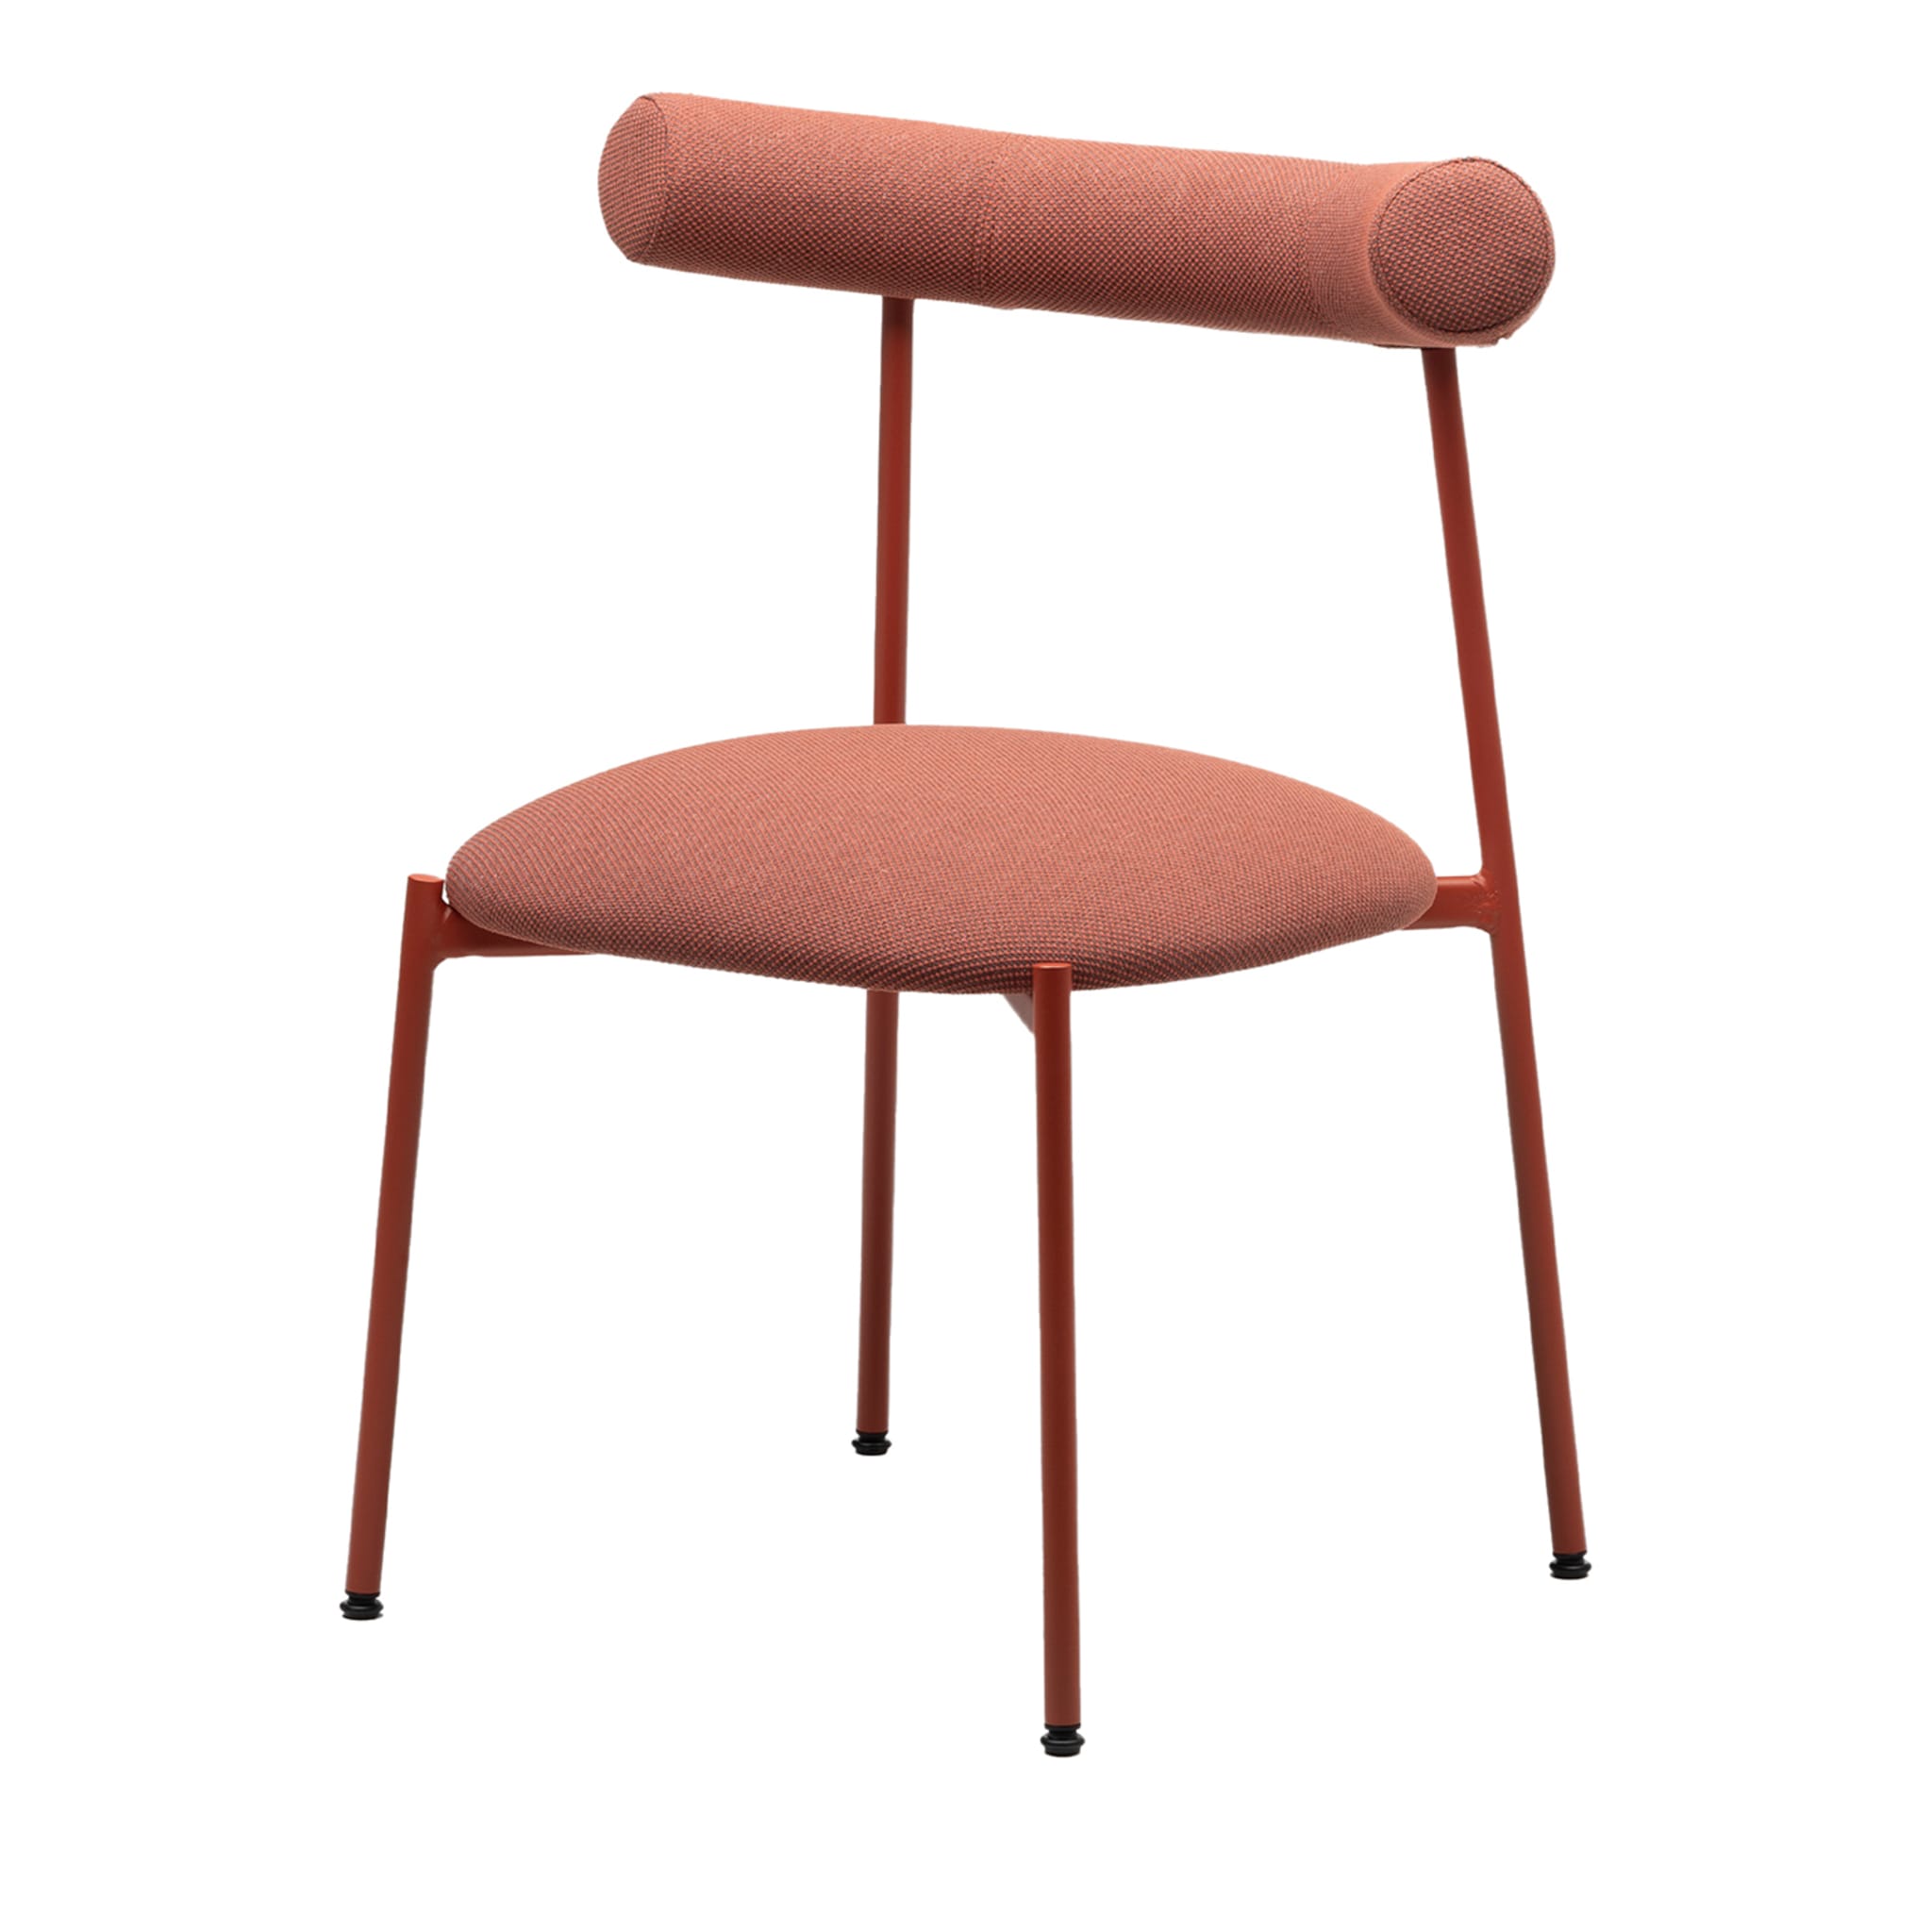 Pampa S Ziegelroter Stuhl von Studio Pastina - Hauptansicht